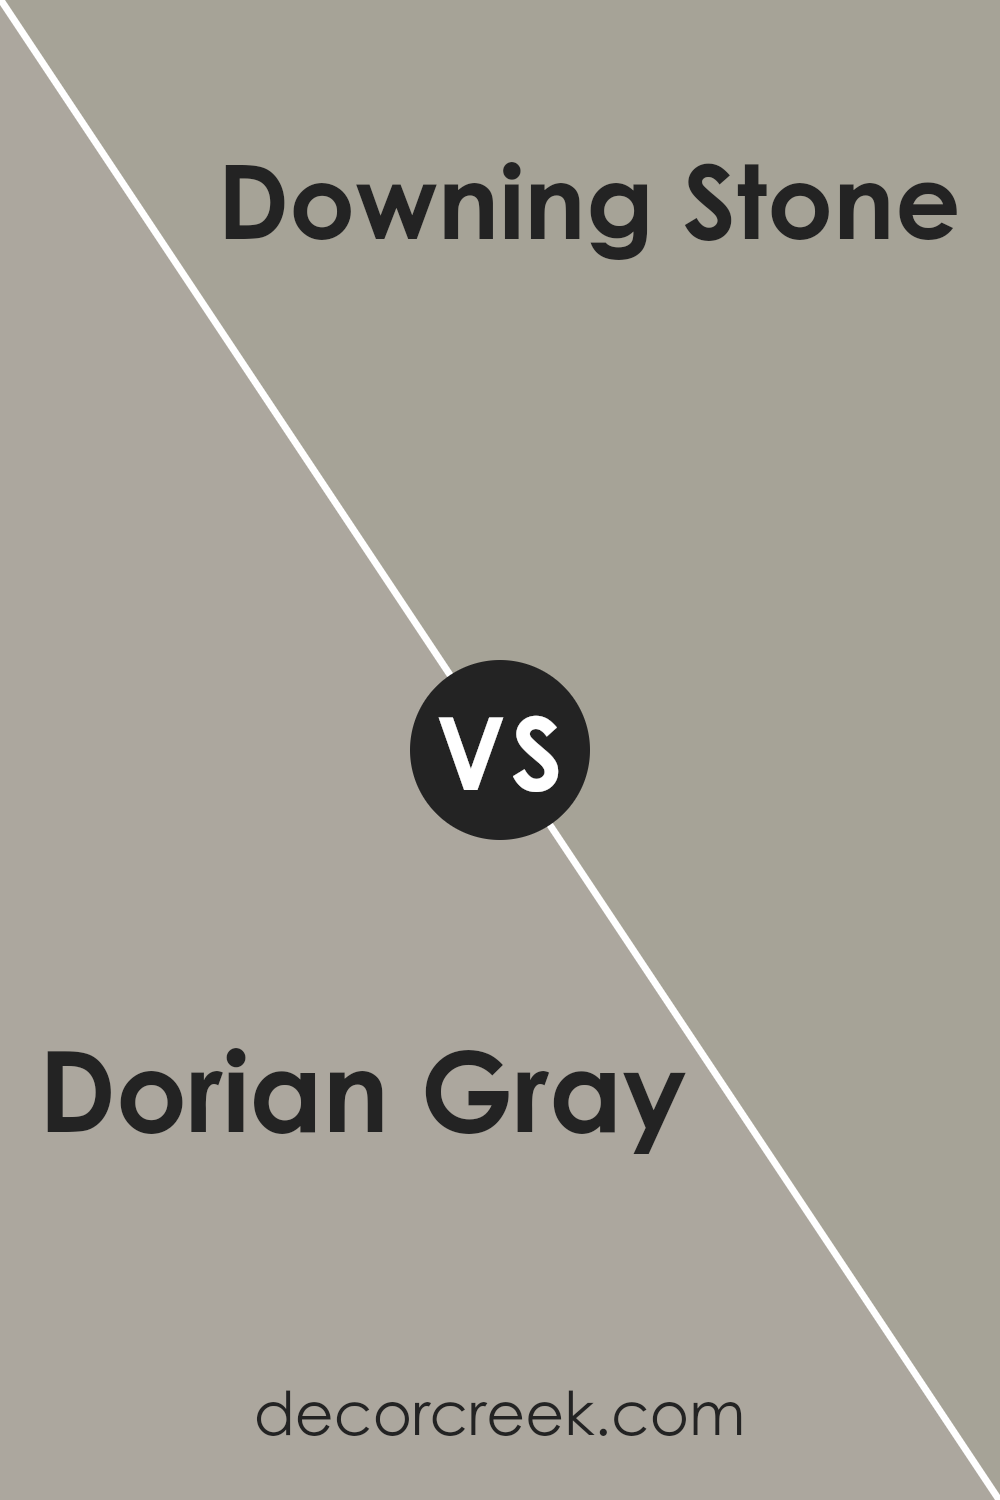 dorian_gray_sw_7017_vs_downing_stone_sw_2821